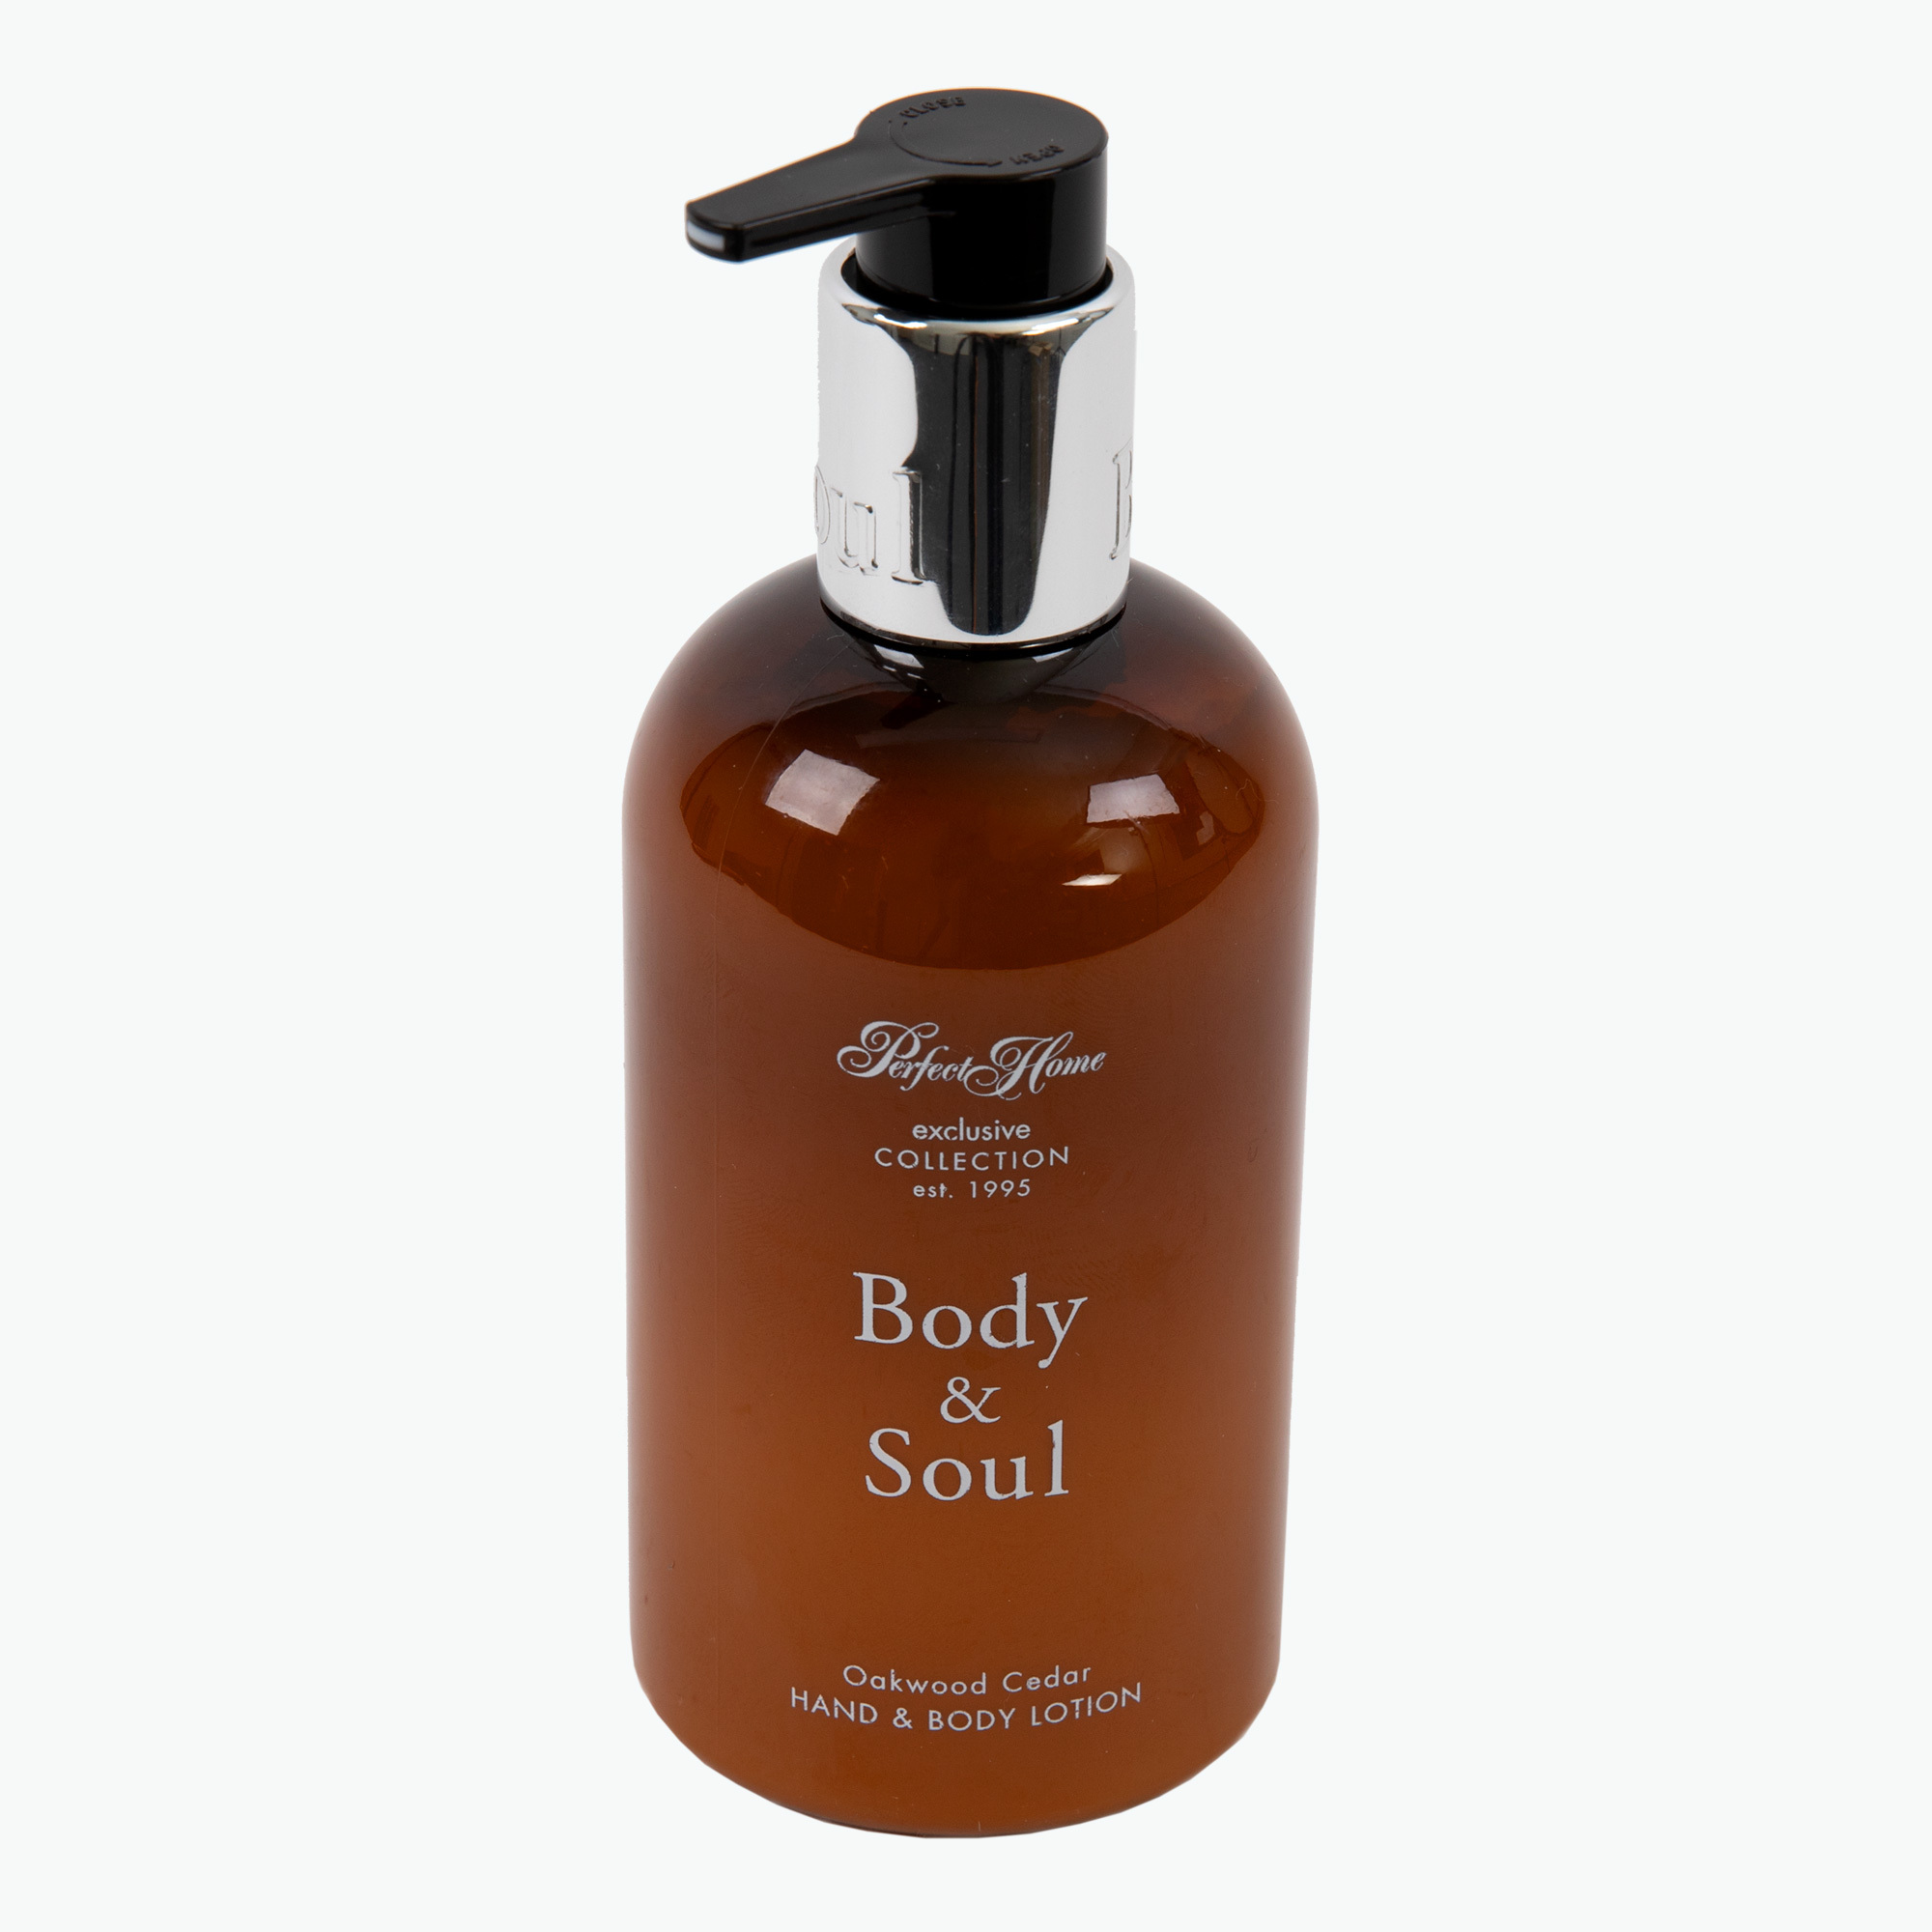 Body & Soul hand & body lotion Oakwood Cedar